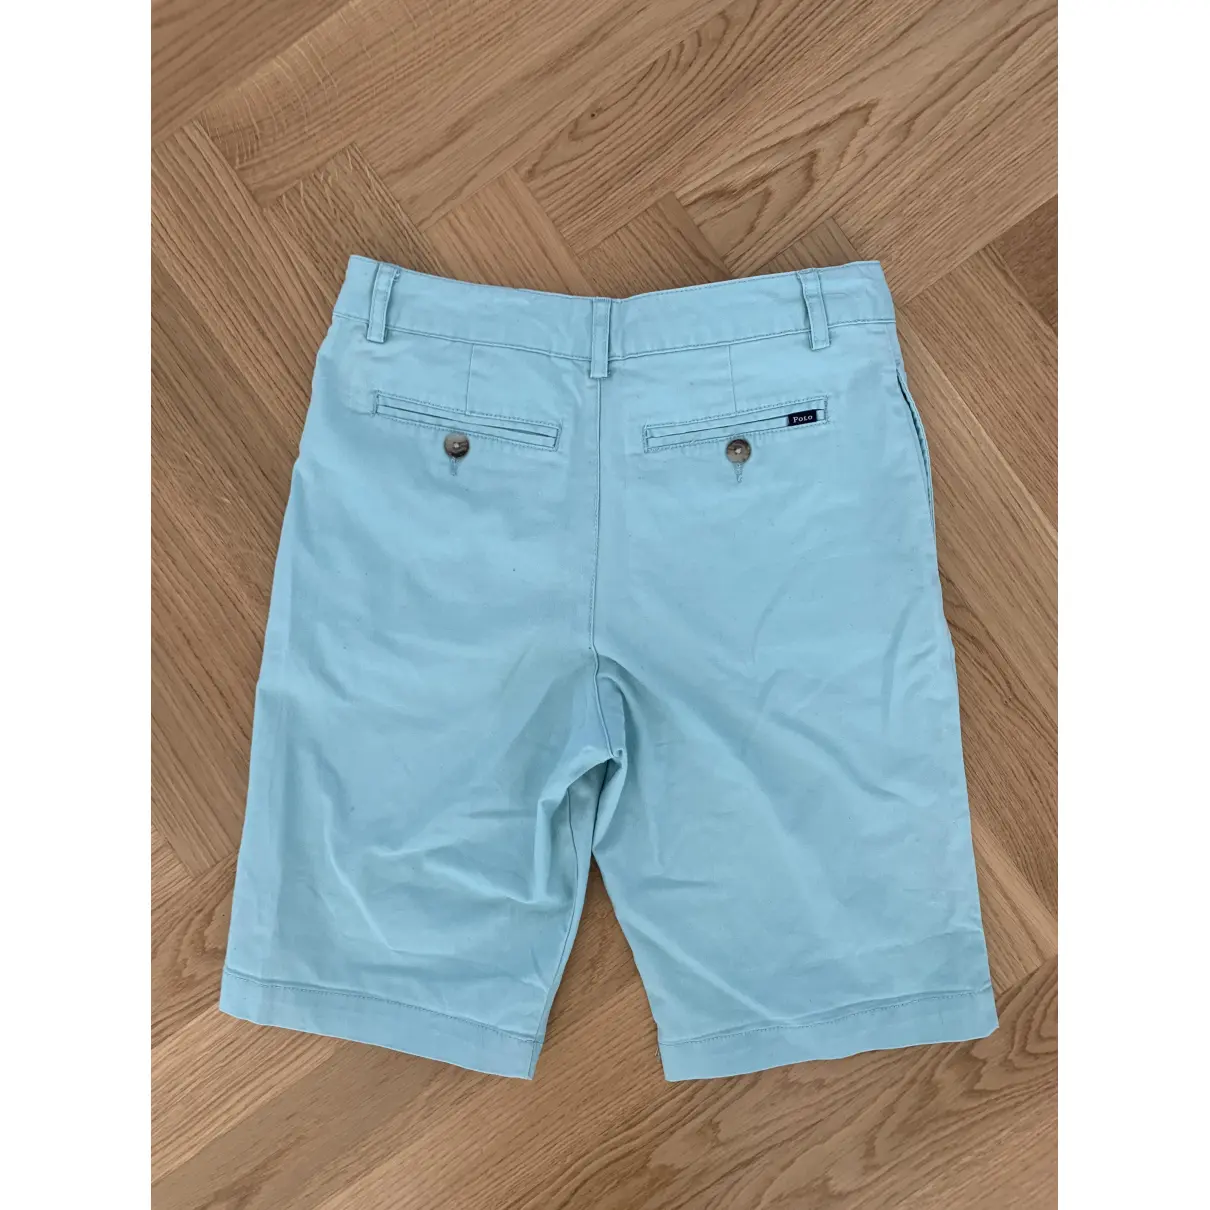 Buy Polo Ralph Lauren Blue Cotton Shorts online